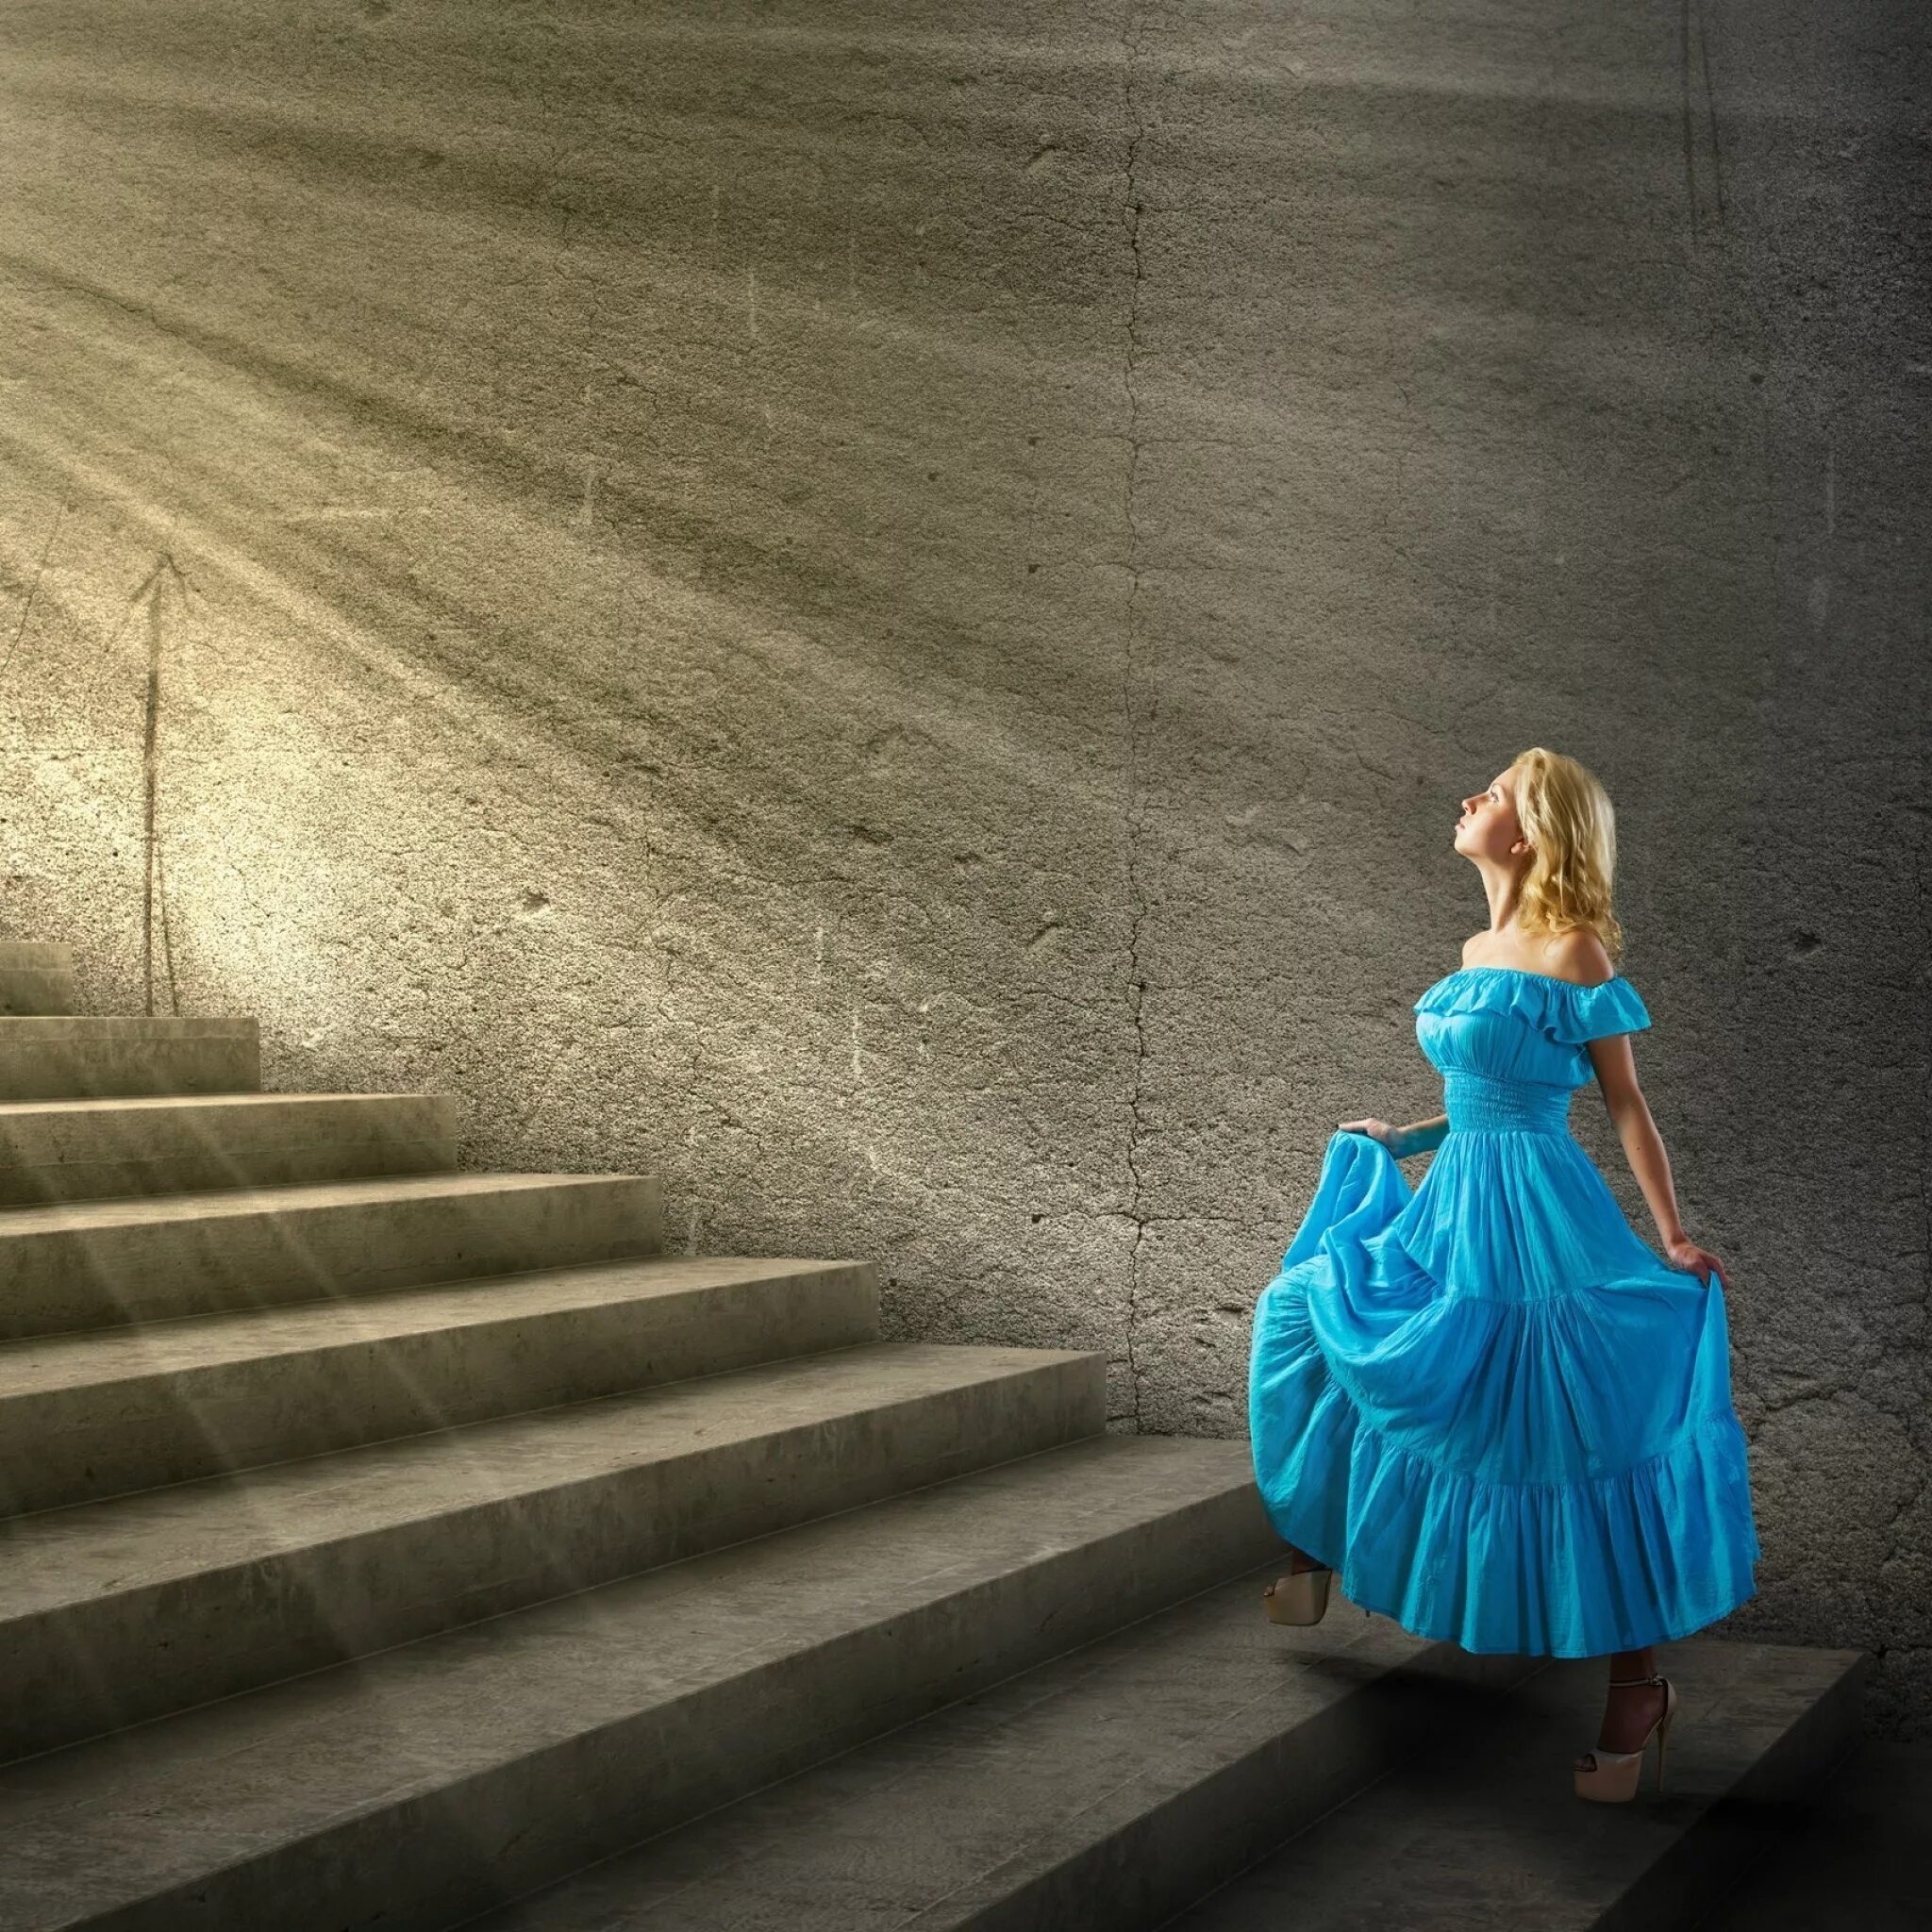 Неслышно ступая. Девушка в платье. Девушка поднимается по лестнице. Девушка в платье на ступеньках. Девушка на лестнице в платье.